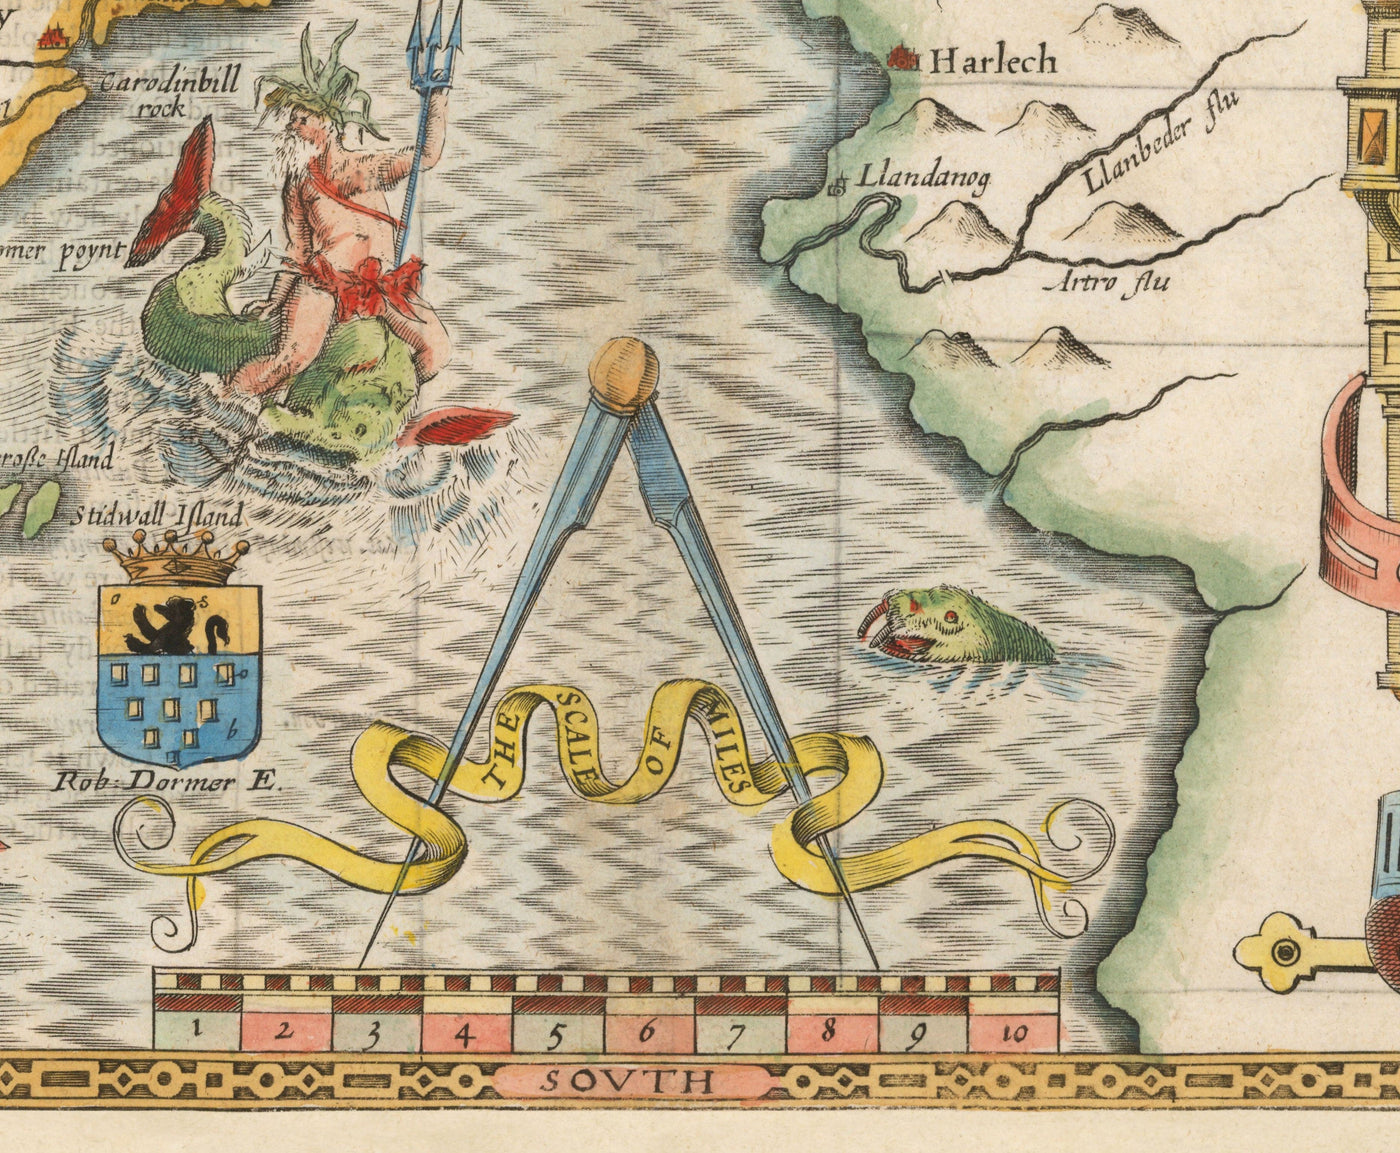 Old Map of Caernarfonshire Wales, 1611 by John Speed - Caernarfon, Snowdon, Gwynedd, Bangor, Conwy, Llandudno